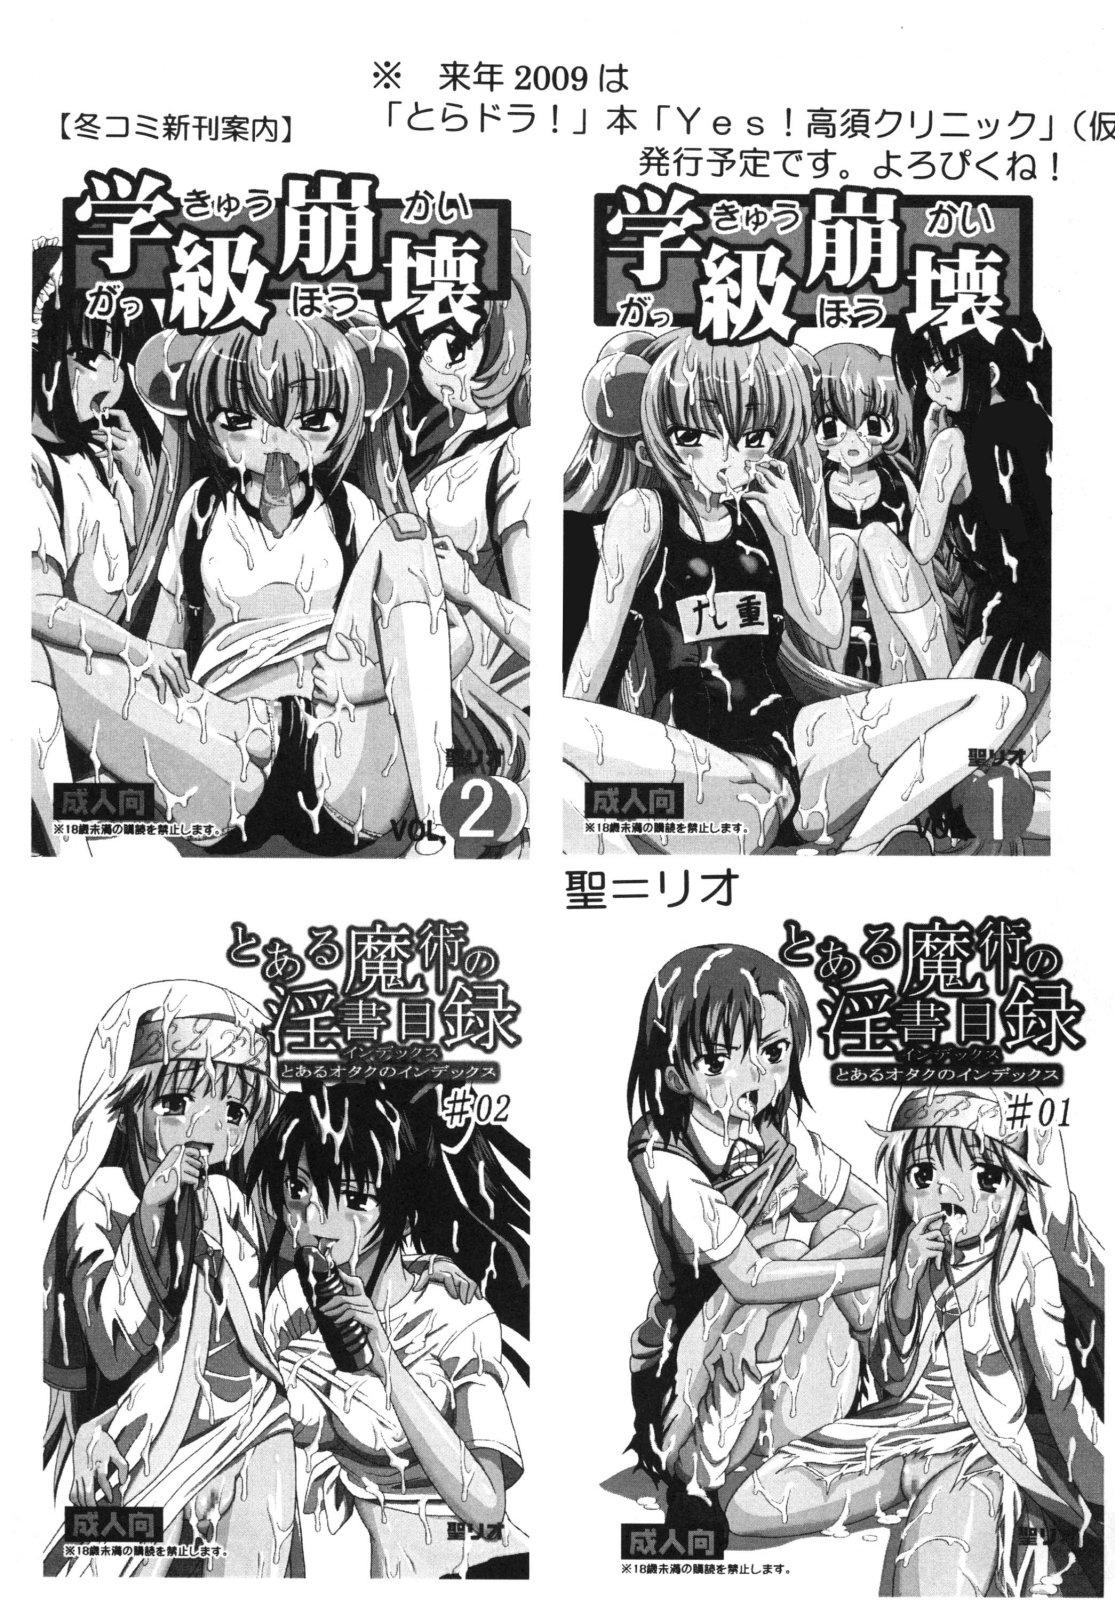 Busty Toaru Otaku no Index #2 - Toaru majutsu no index Gay Cock - Page 49